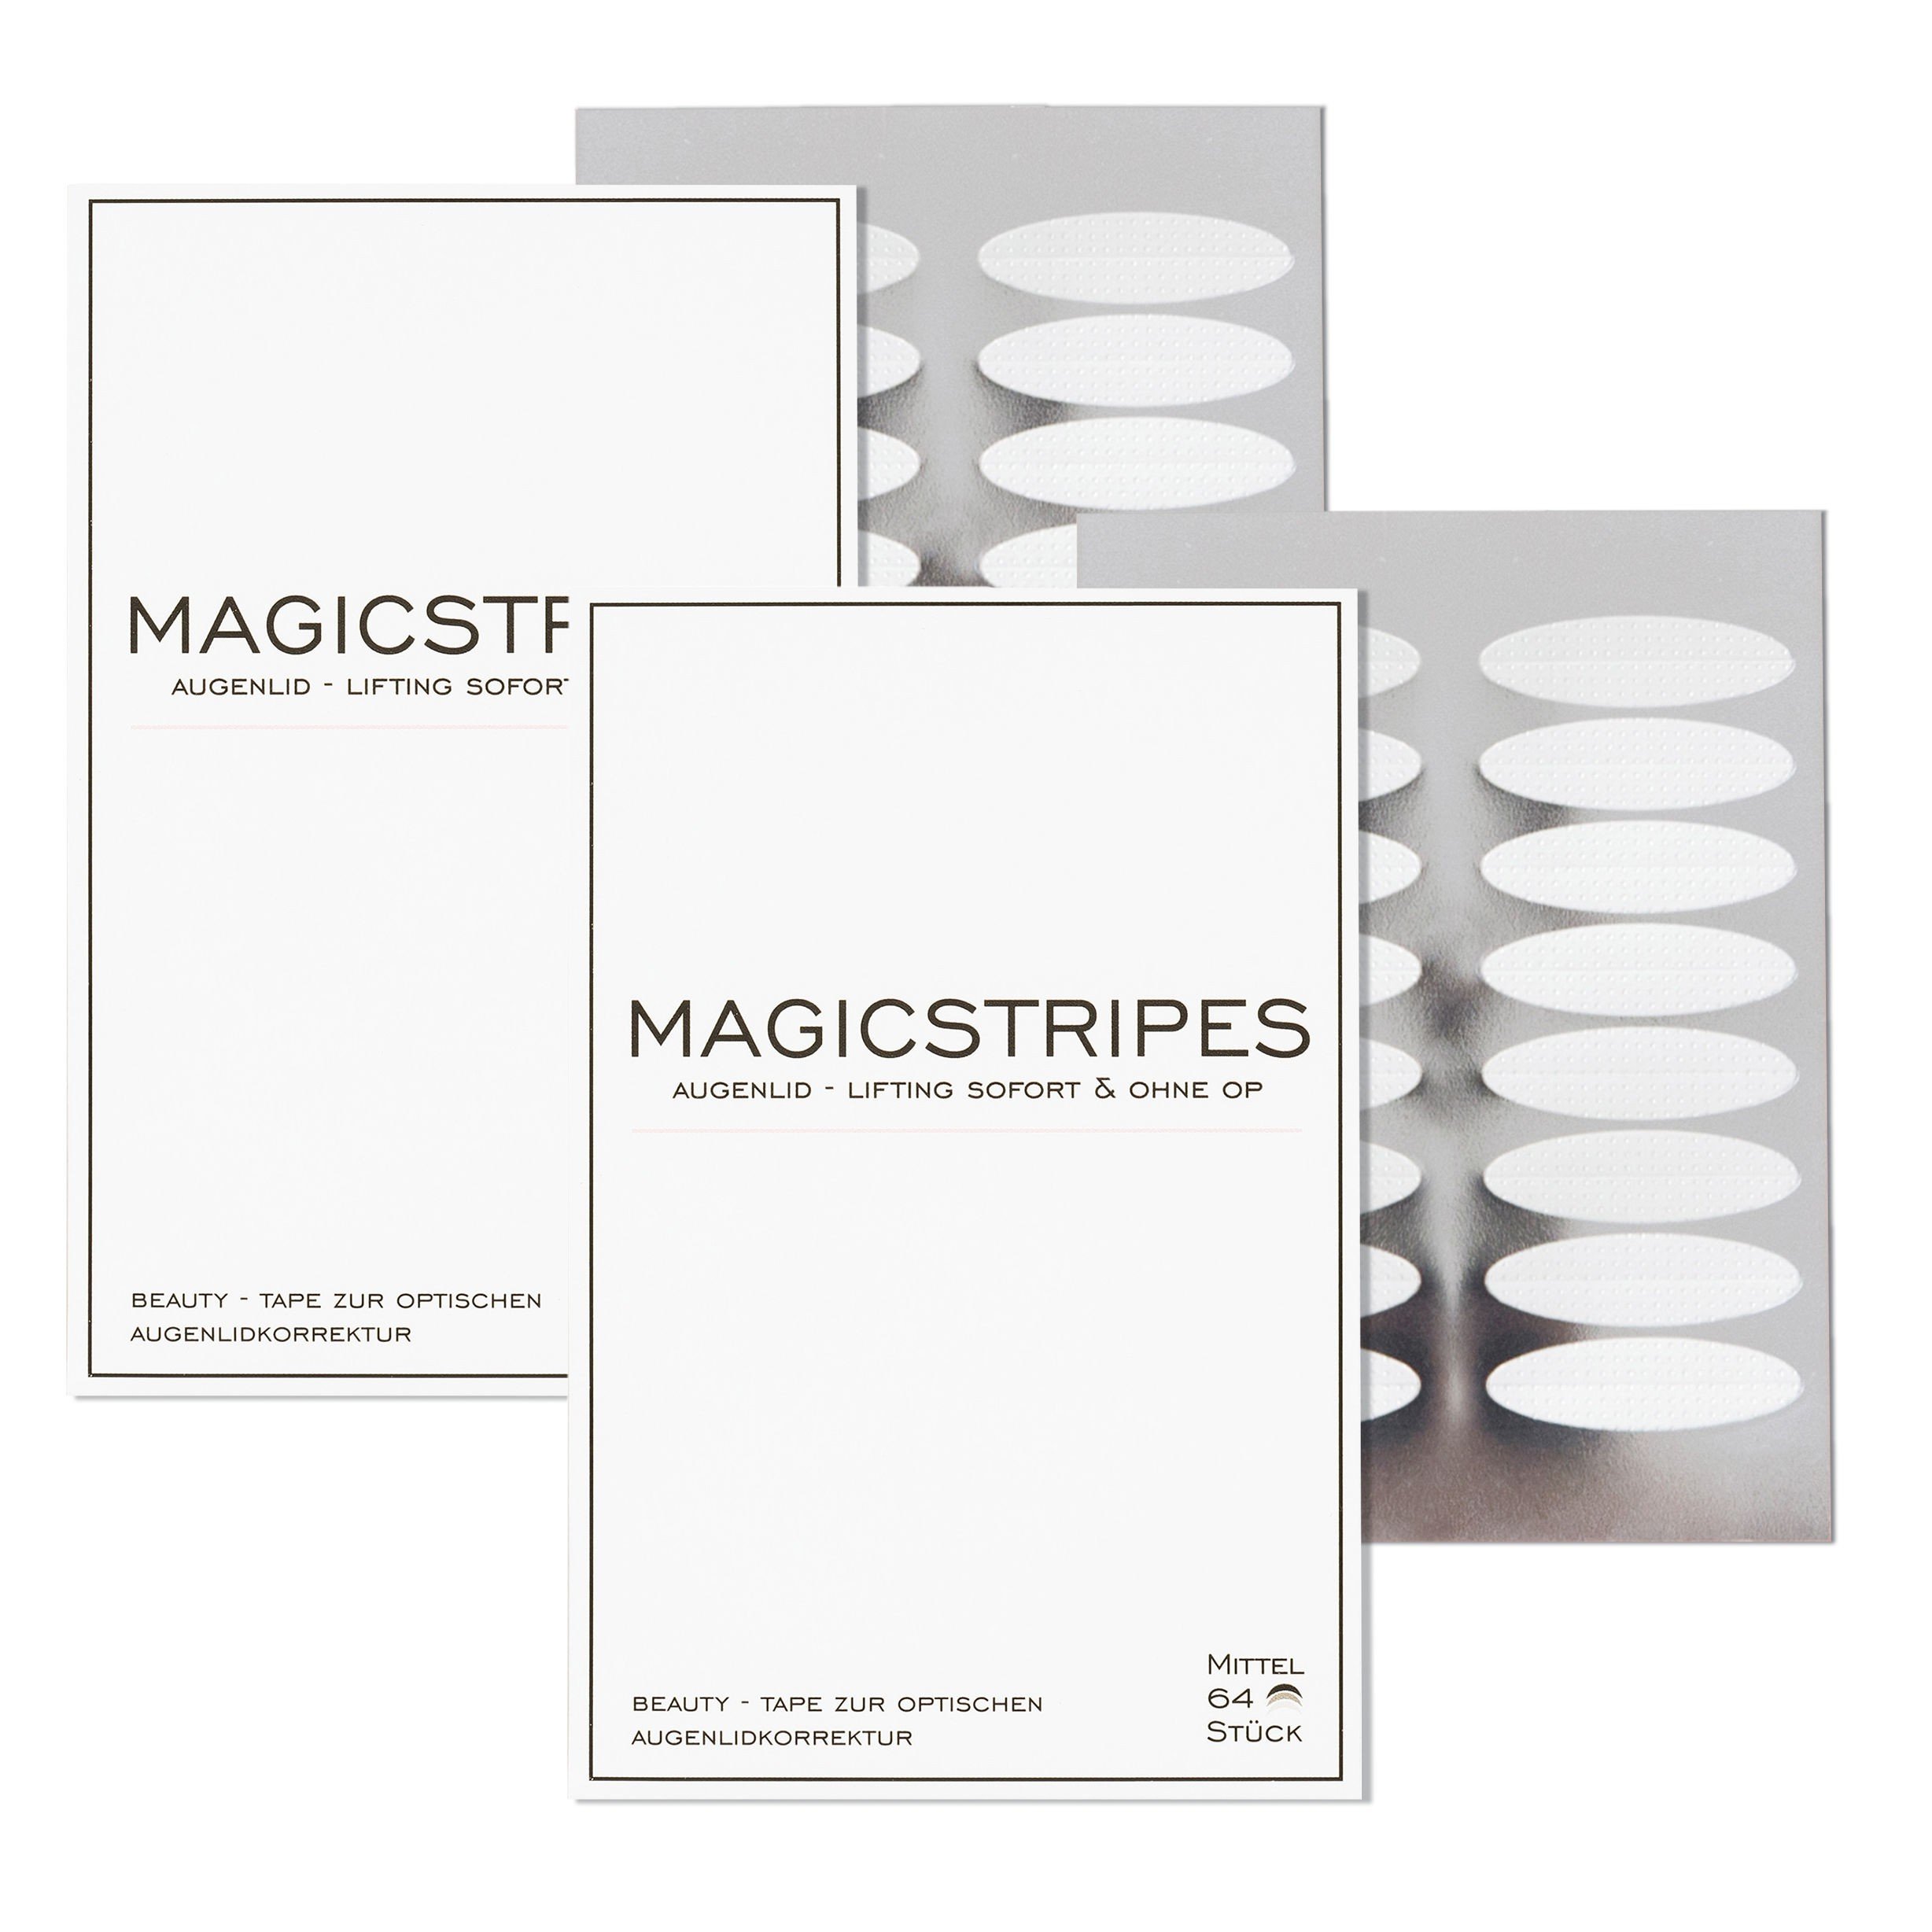 Magicstripes Augenlid Lifting 2 Monatsvorrat Magicstripes Schonheitsinstitut Marken